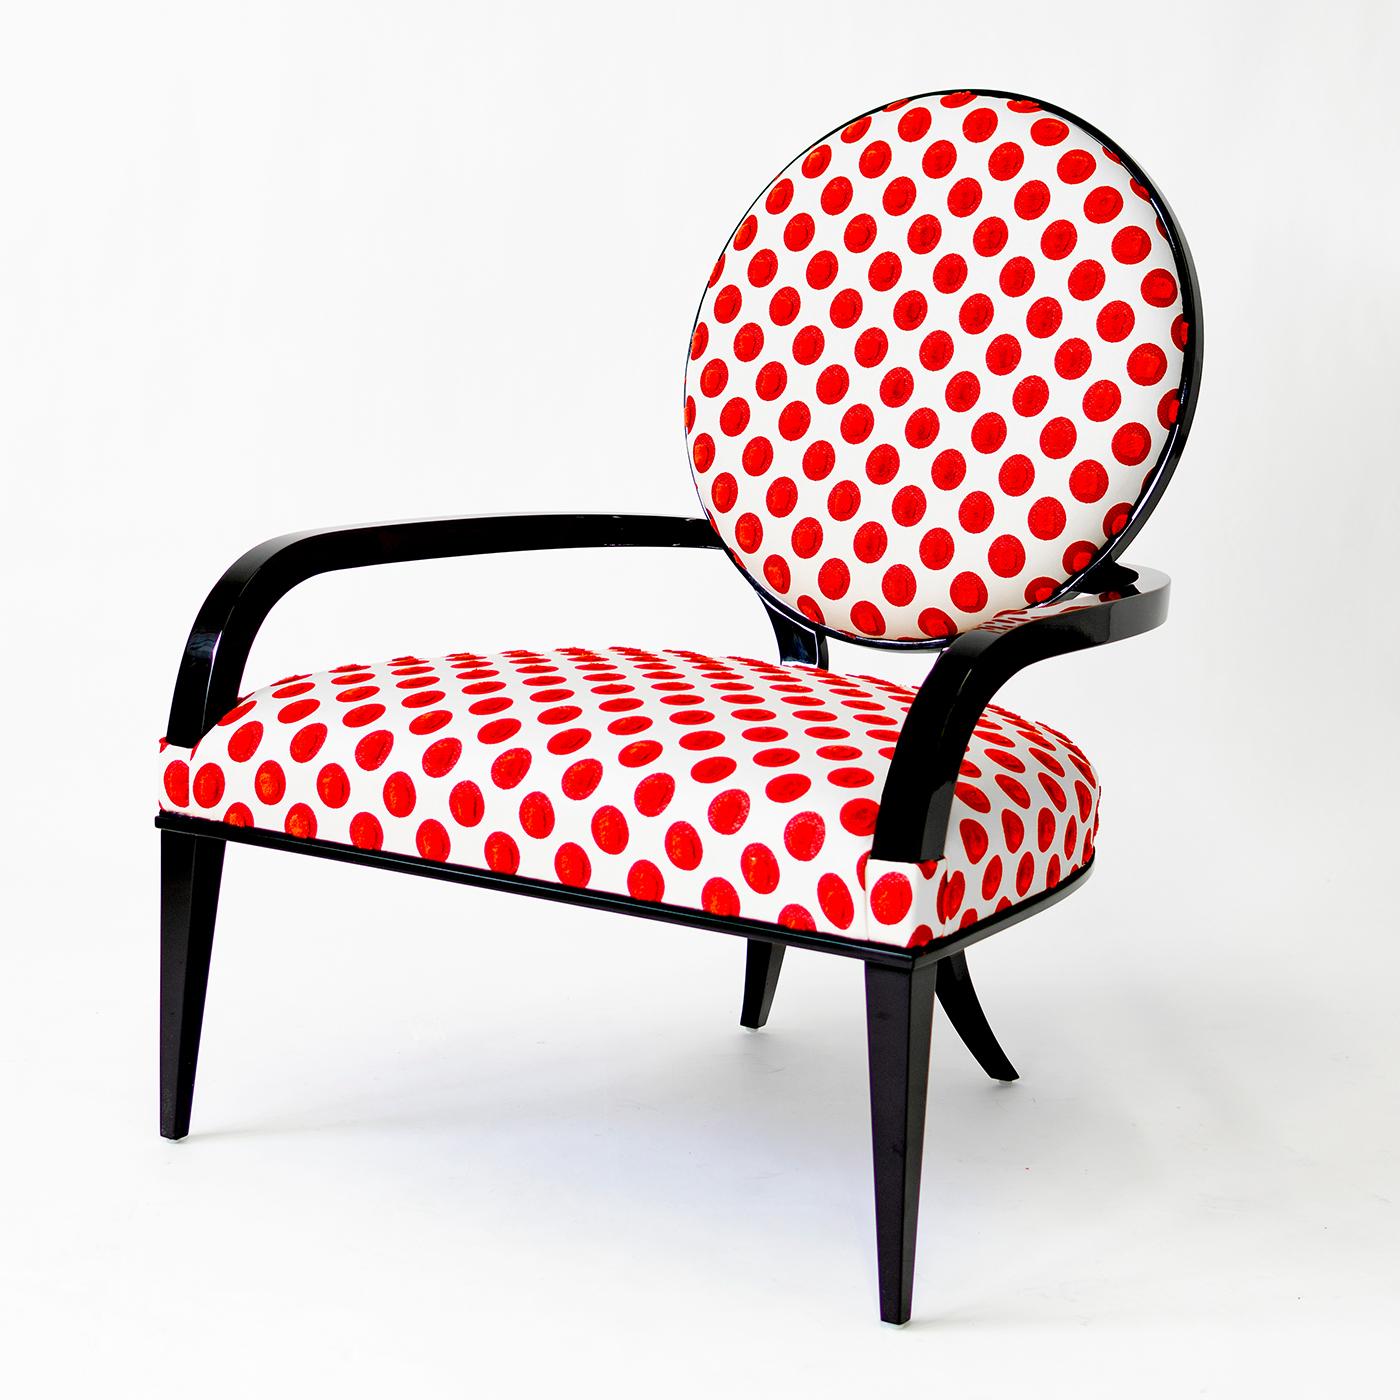 Ce fauteuil exclusif de G. Ventura associe une silhouette élégante à un rembourrage ludique, ce qui en fait le choix idéal pour une variété d'intérieurs. La construction complexe est définie par une forme accueillante, mise en valeur par les lignes